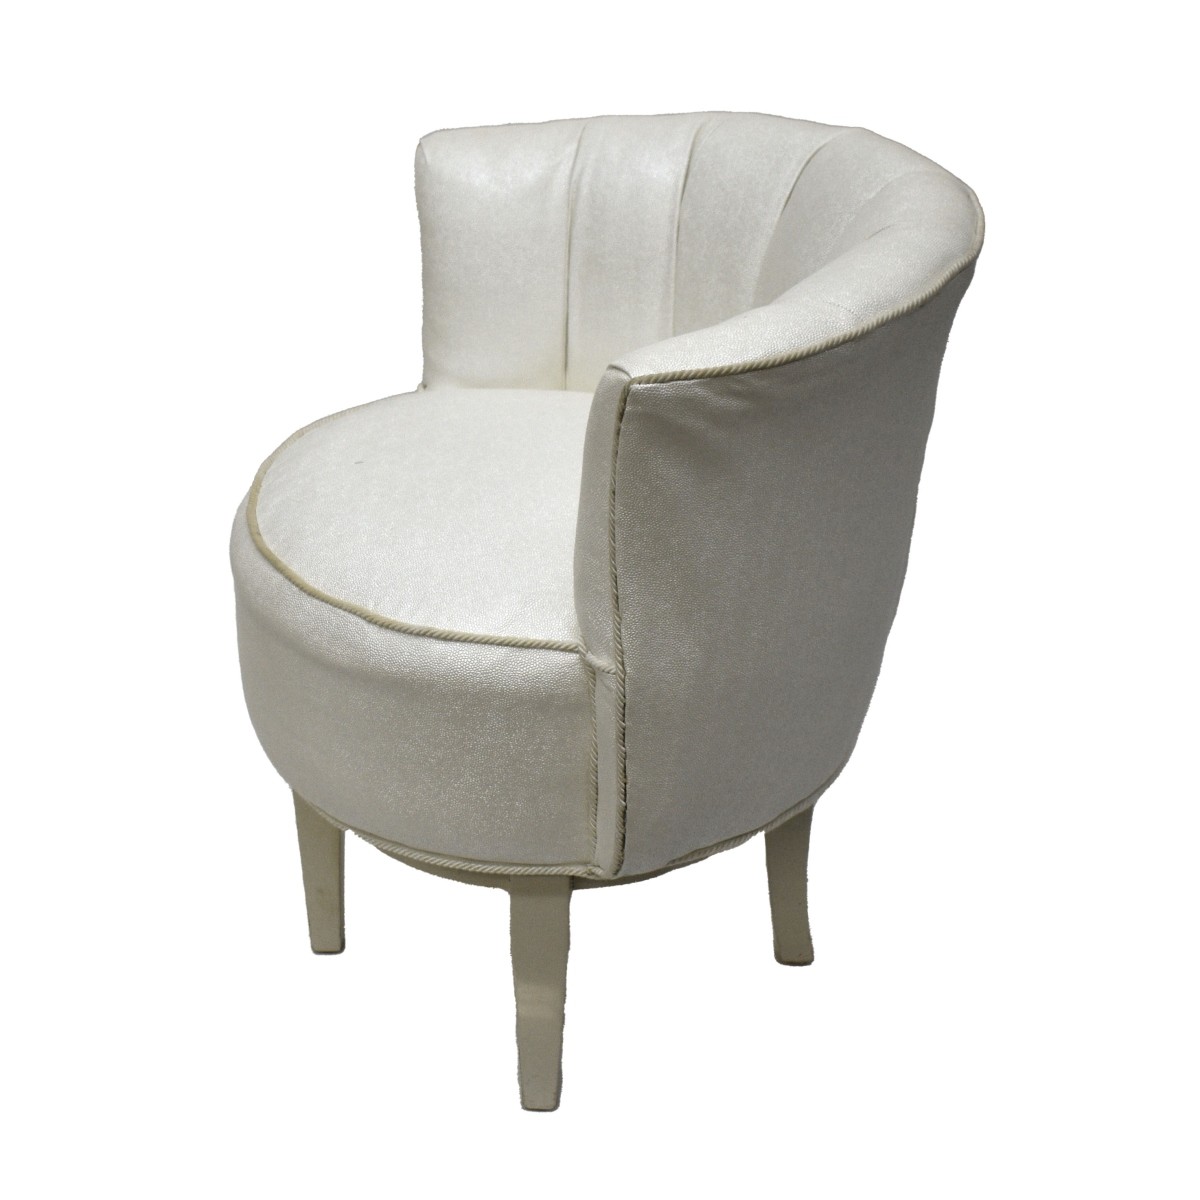 Modern Upholstered Swiveling Slipper Chair.